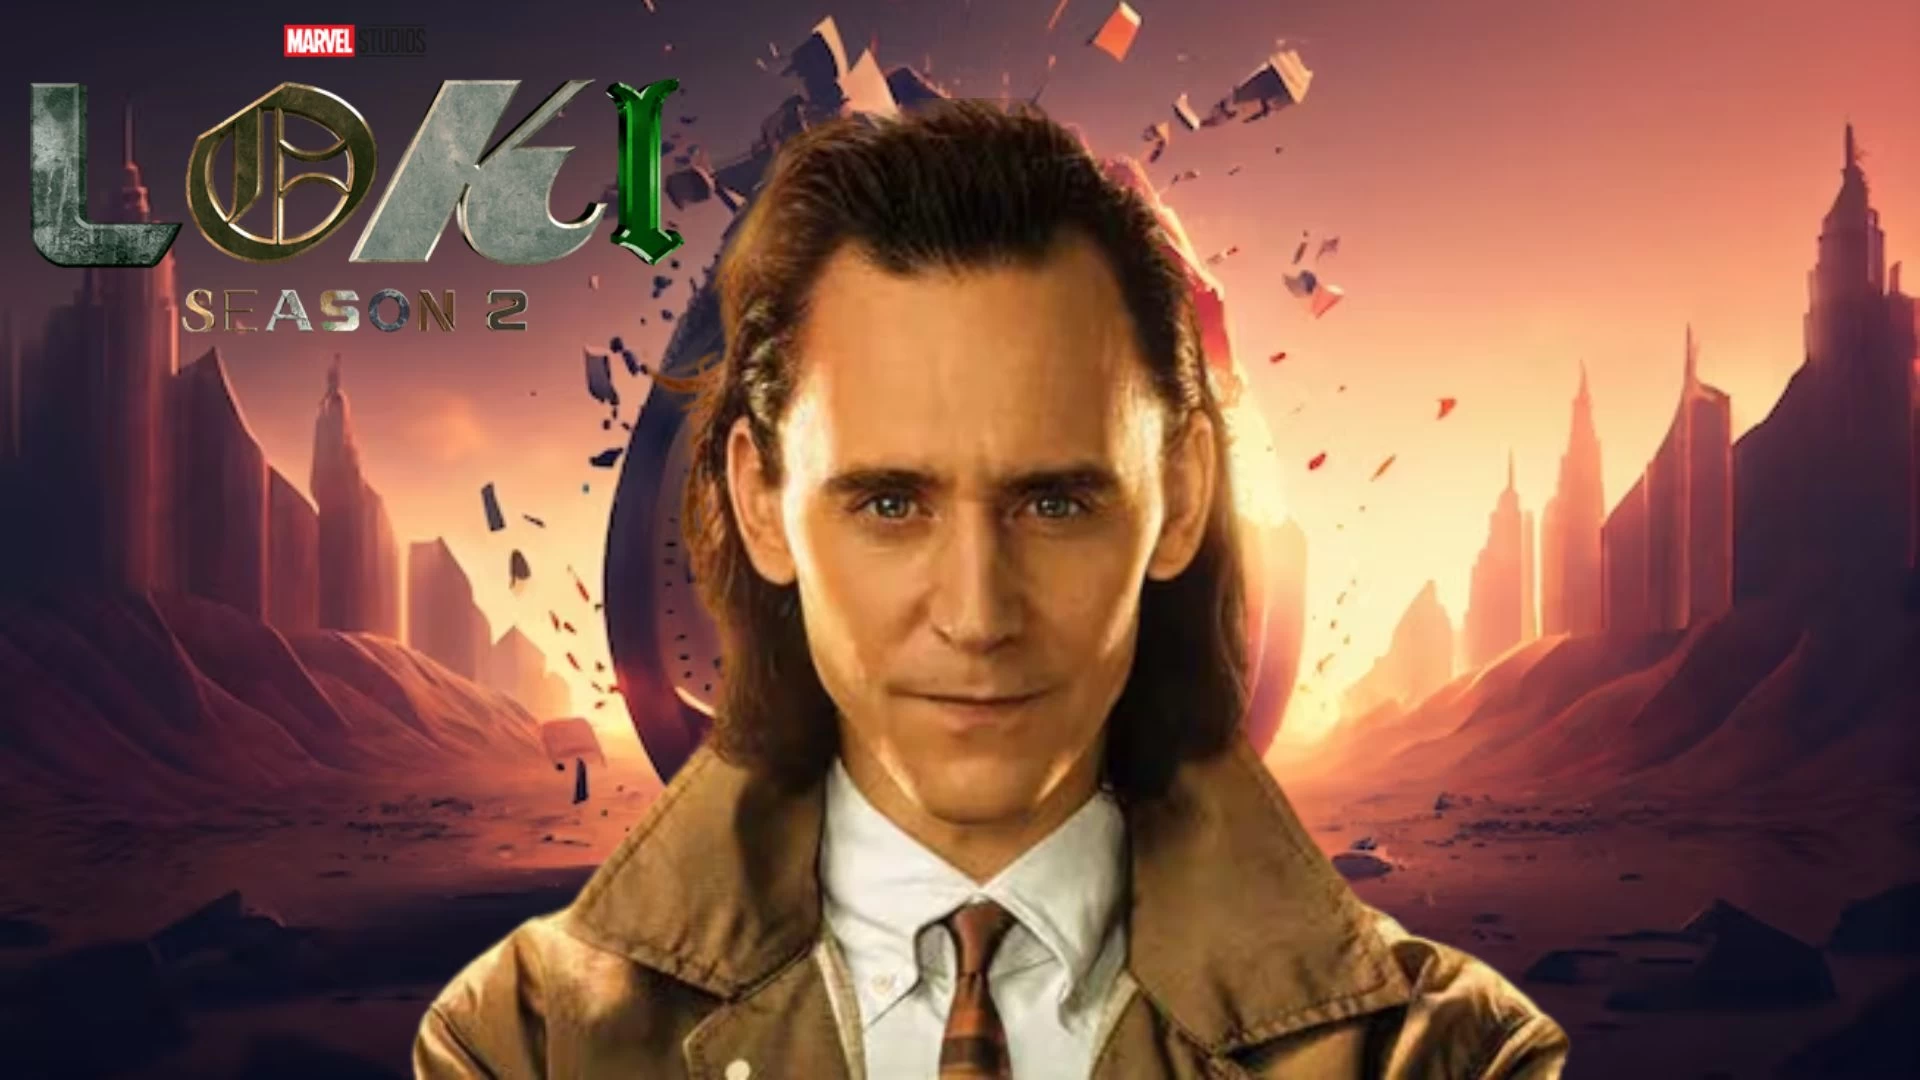 Explicación del final del episodio 2 de la temporada 2 de Loki, fecha de lanzamiento, reparto, trama, resumen, reseña, dónde mirar y más